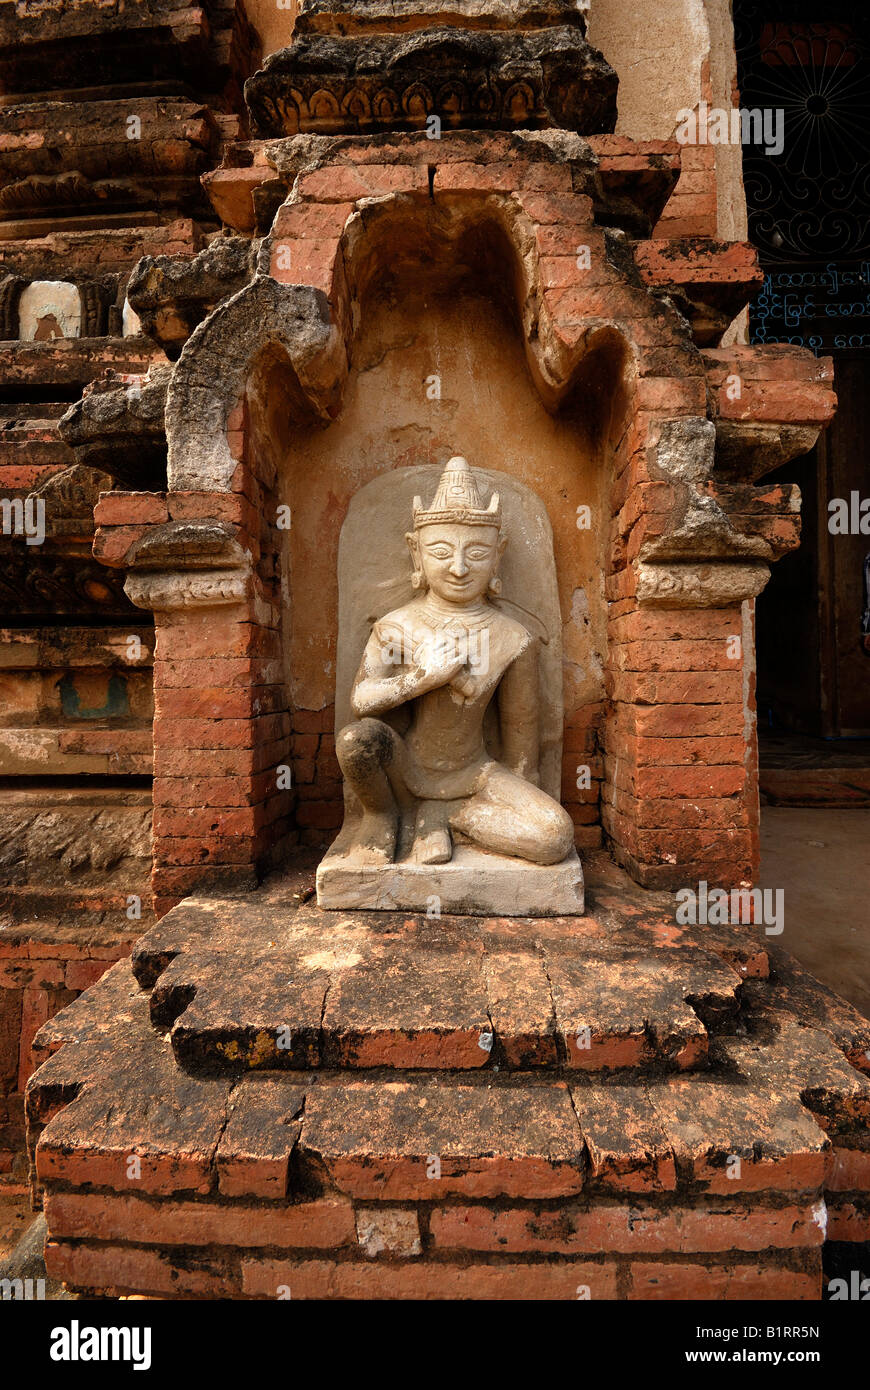 Bouddha assis dans une niche en brique, Bagan, Birmanie, Myanmar, en Asie du sud-est Banque D'Images